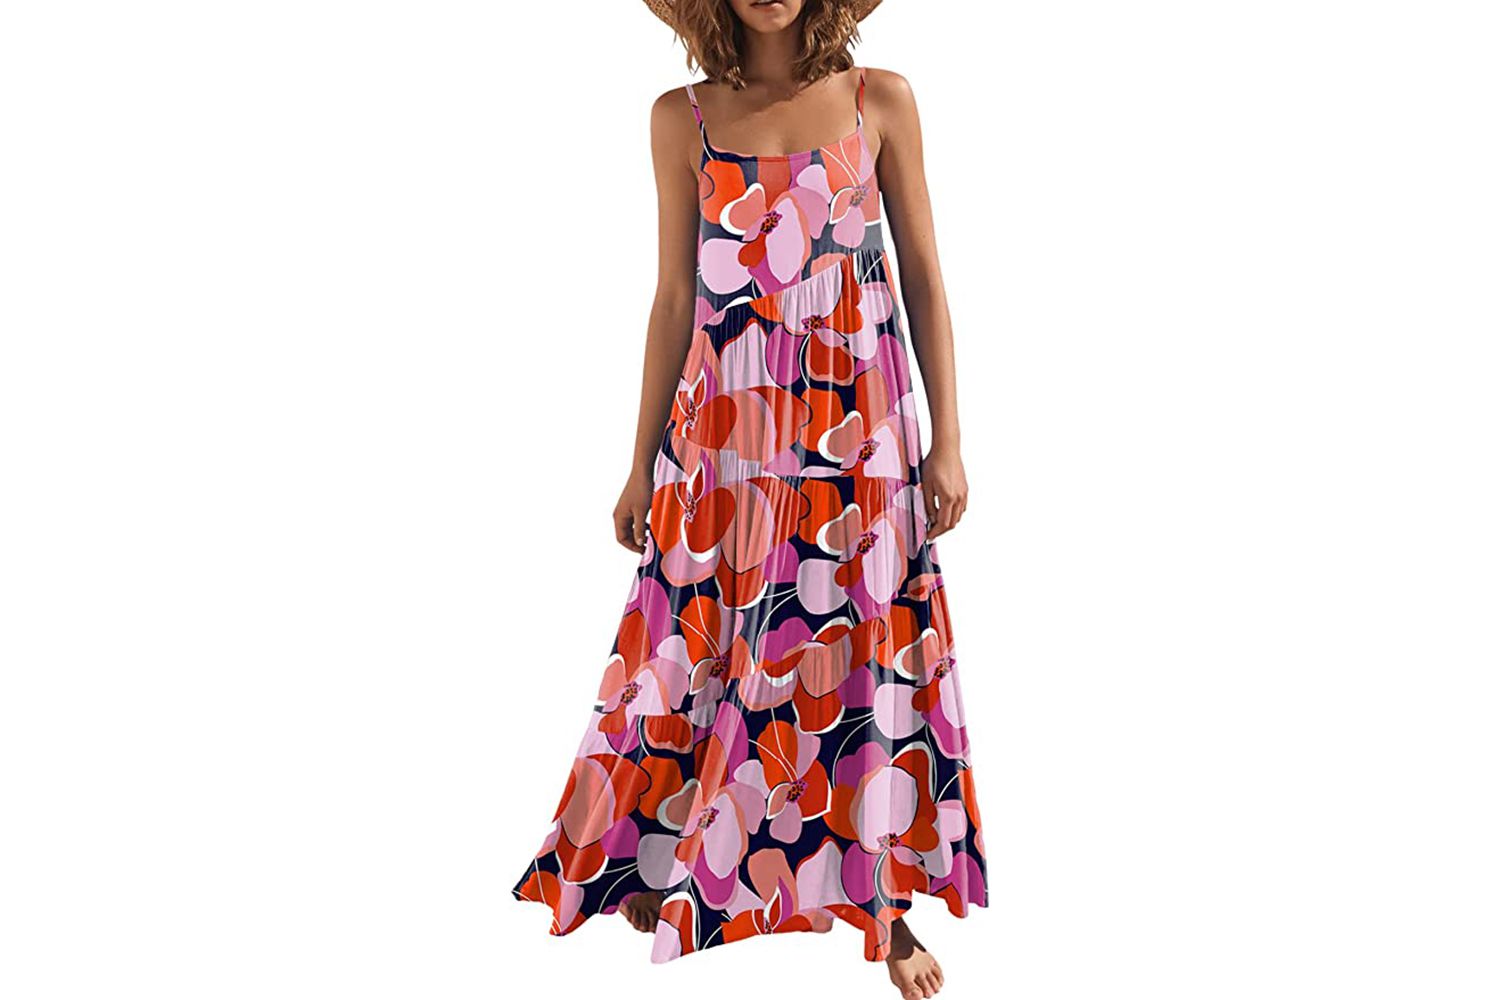 Amazon PD ANRABESS Womenâs Summer Casual Maxi Dress